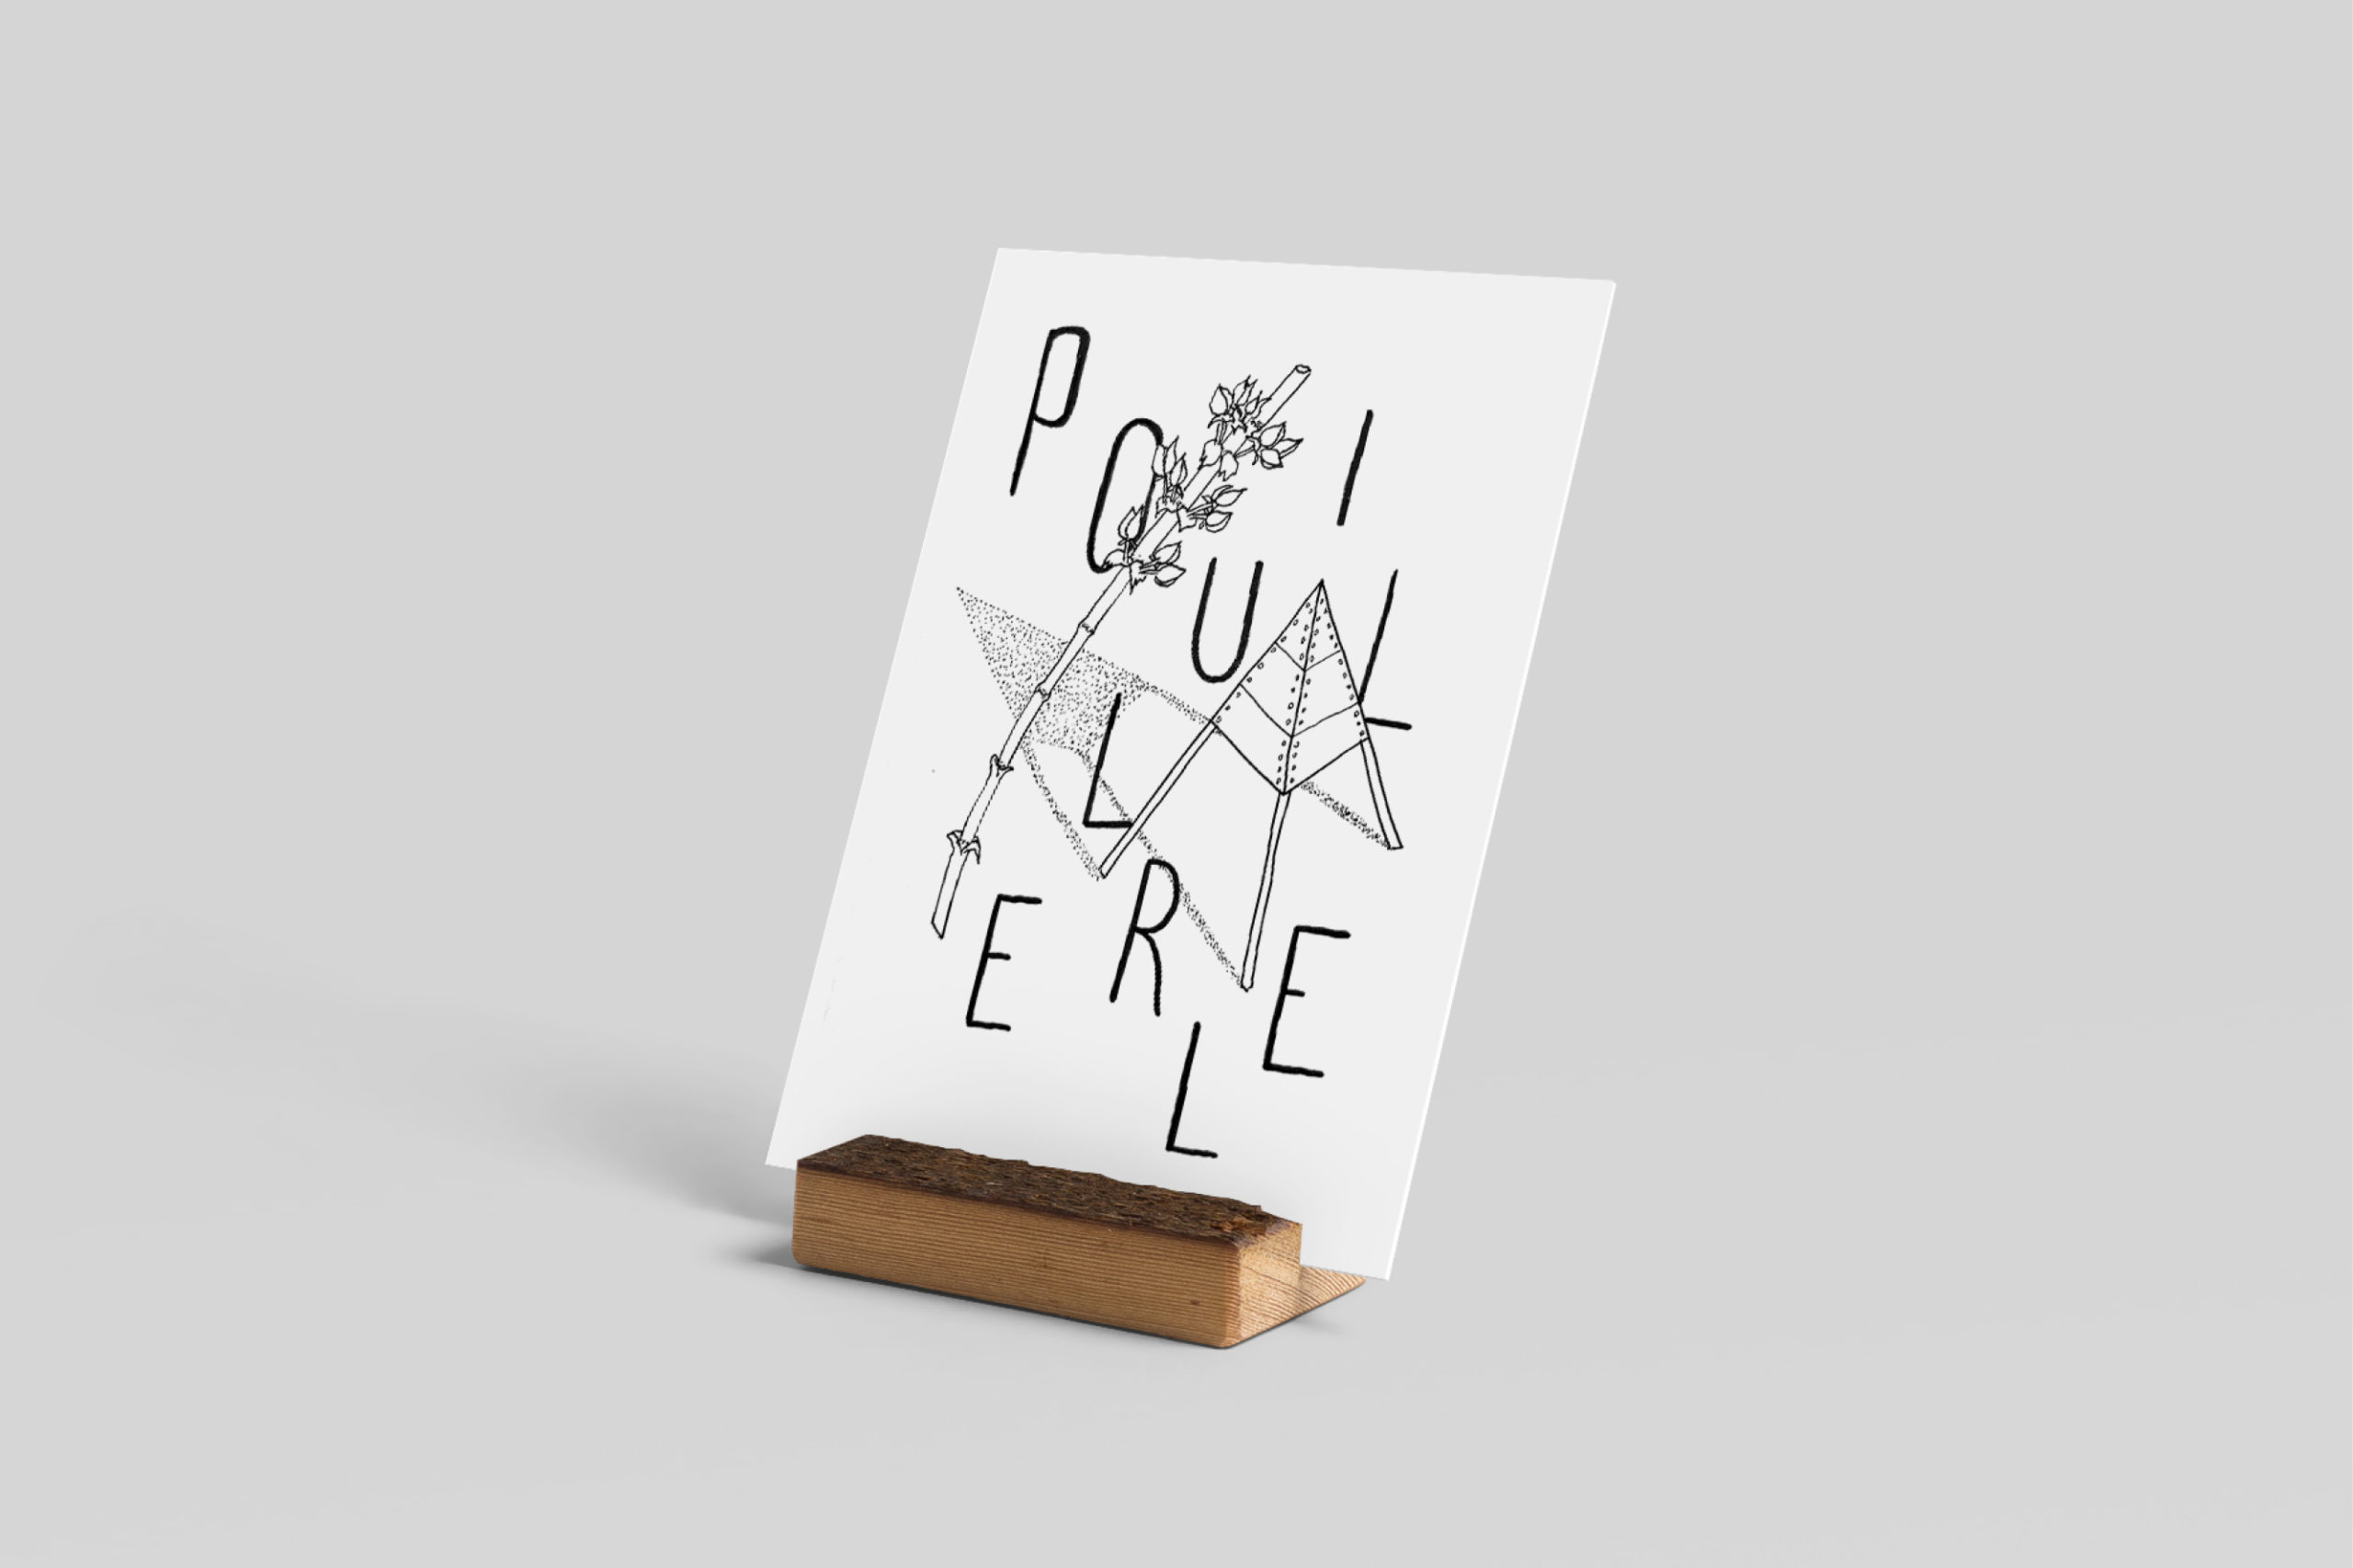 carte-postale-postcard-illustration-graphic-design-pouillerel-la-chaux-de-fonds-atelier-tertre